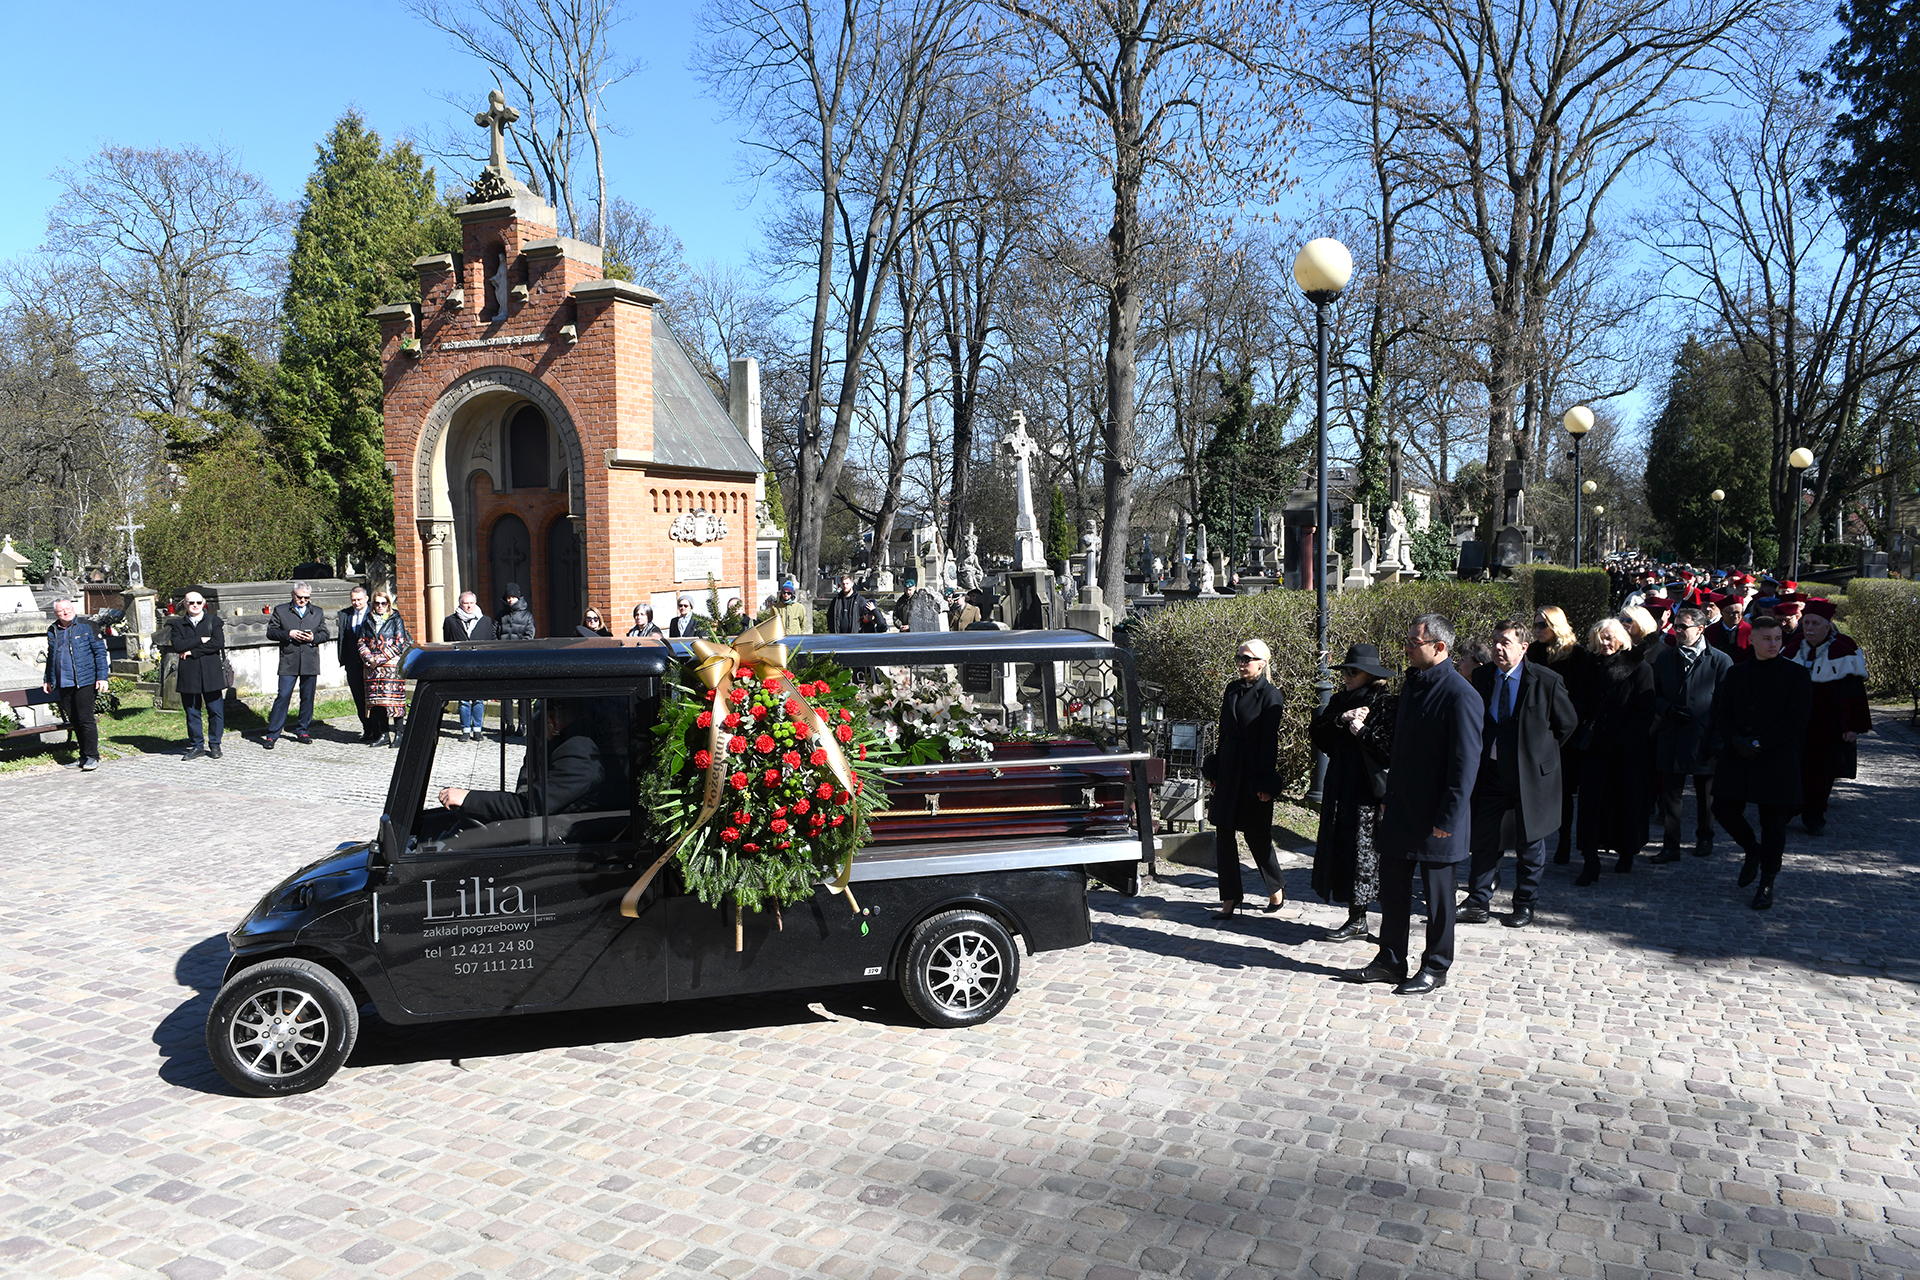 Kondukt za trumną ś.p. rektora Andrzeja Białkiewicza na Cmentarzu Rakowickim